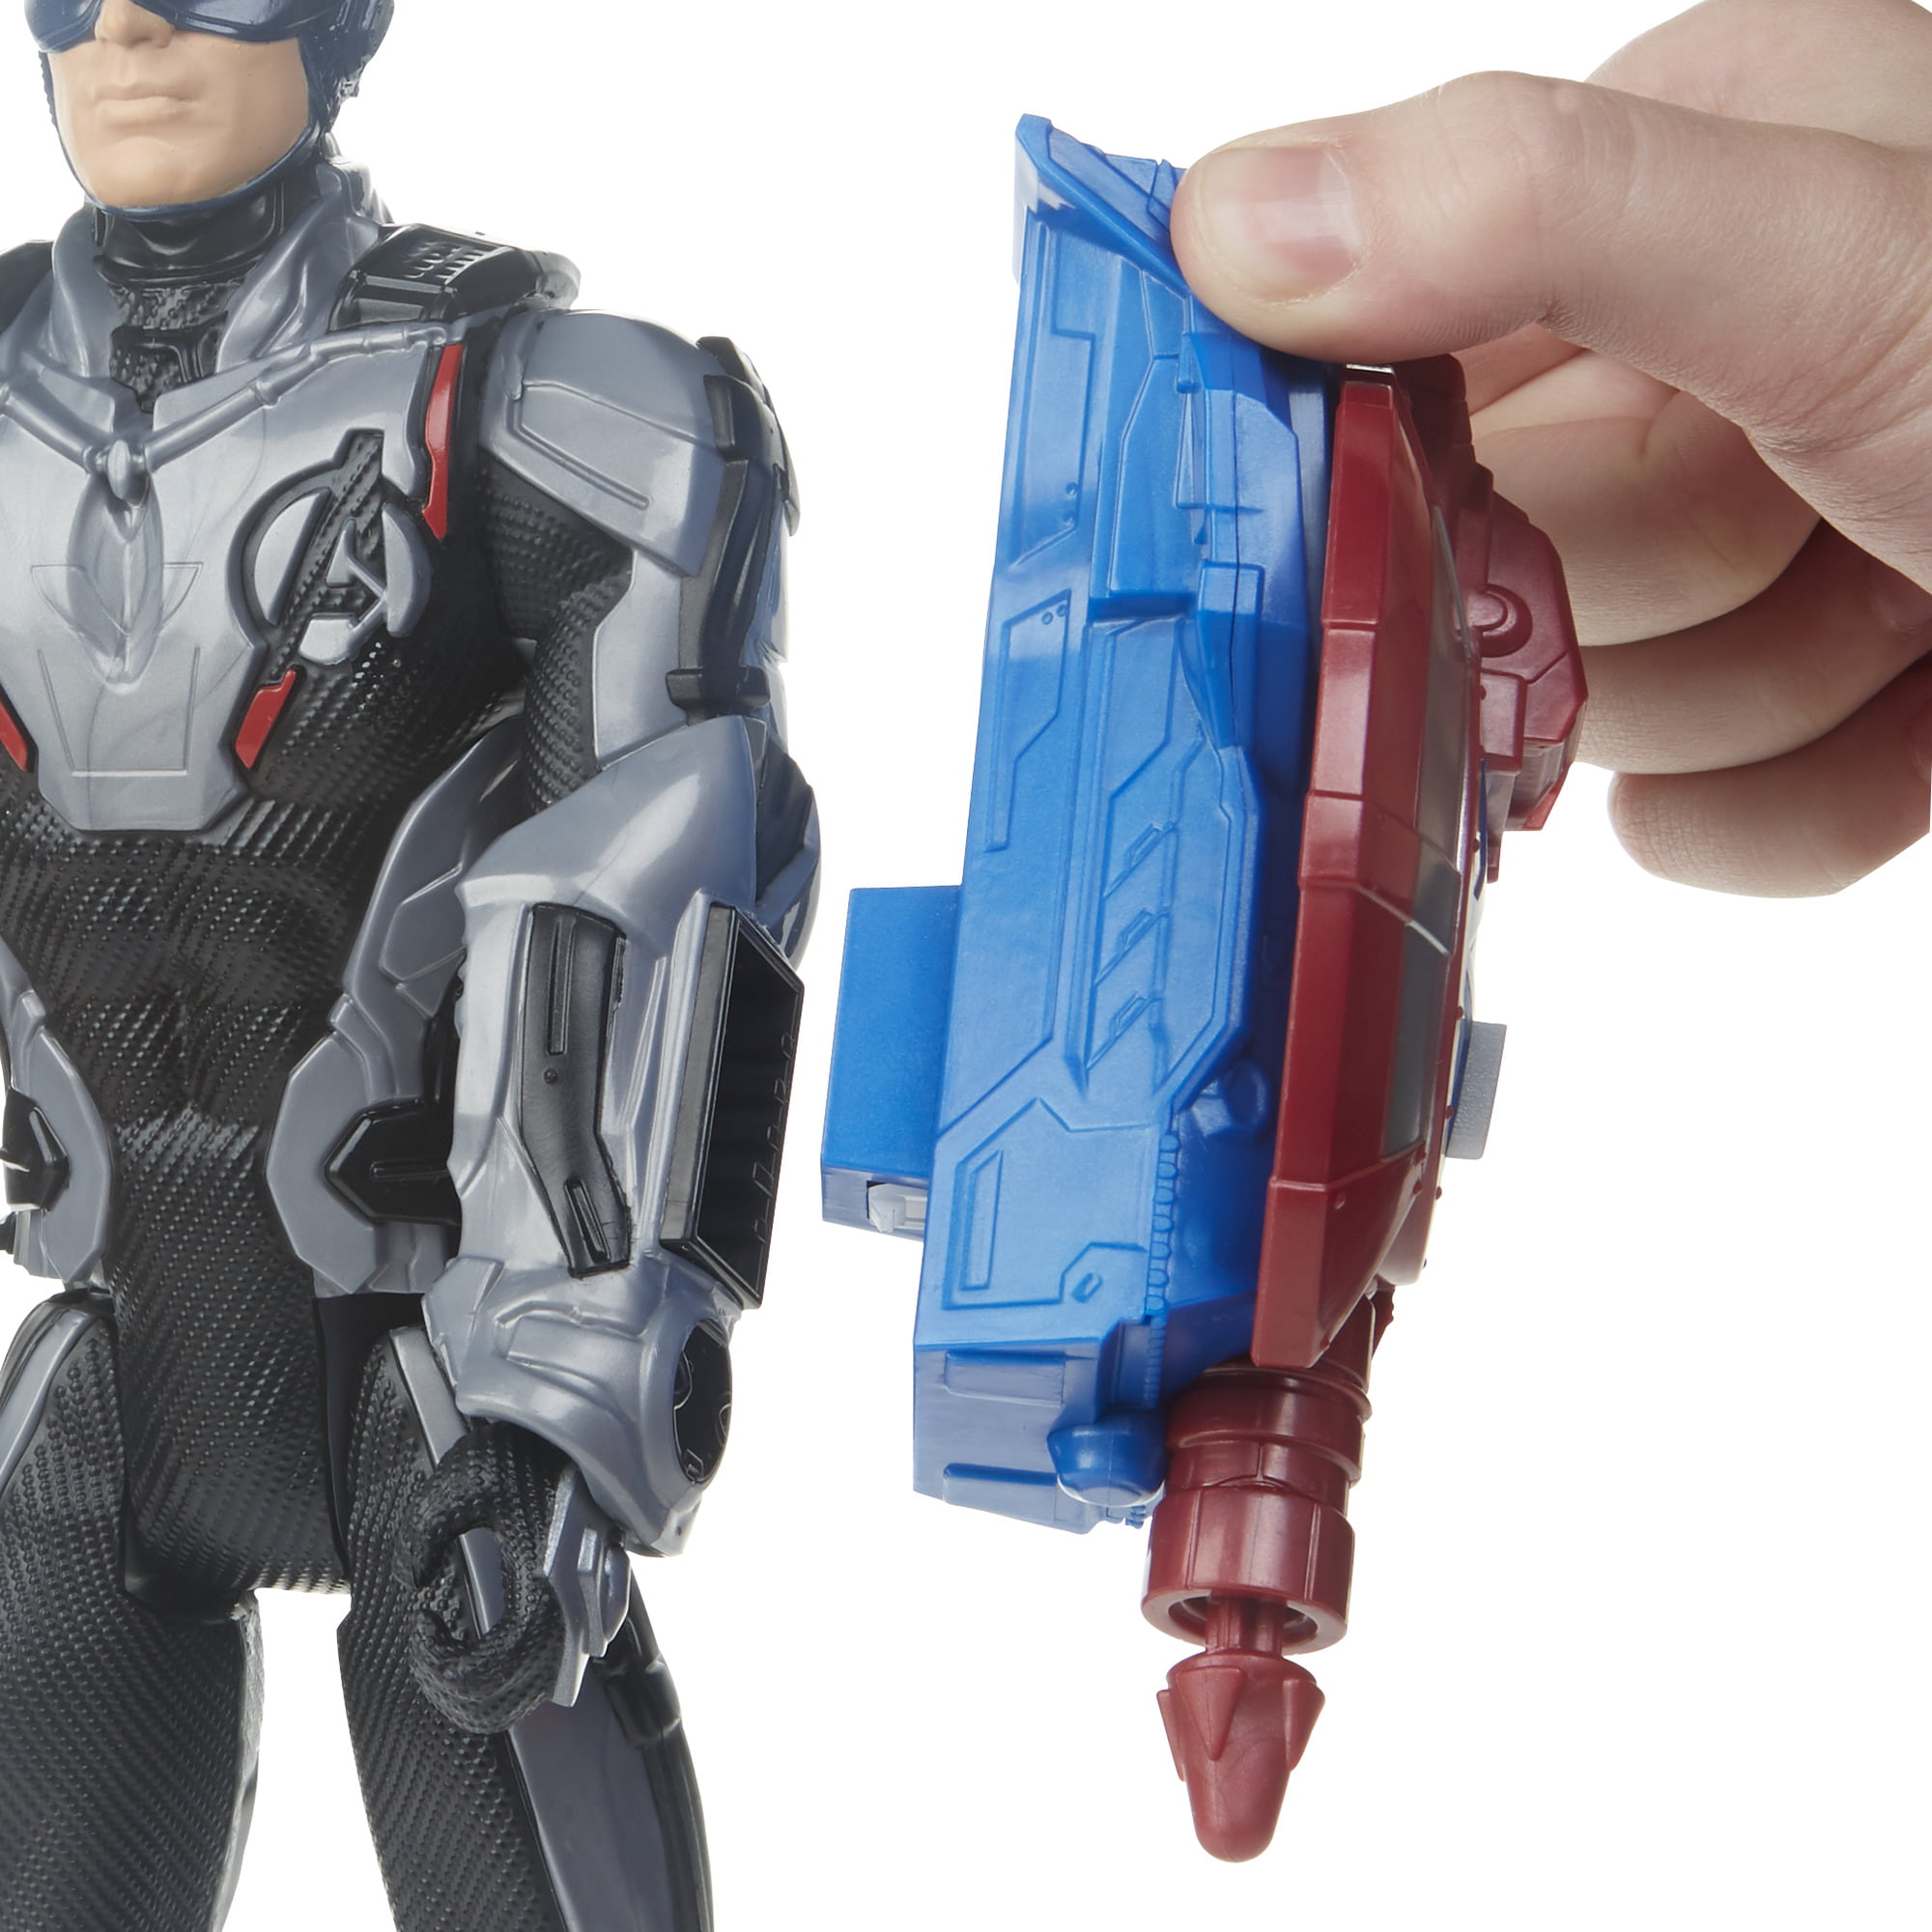 Marvel Avengers: Endgame Titan Hero Power FX Captain America Figure